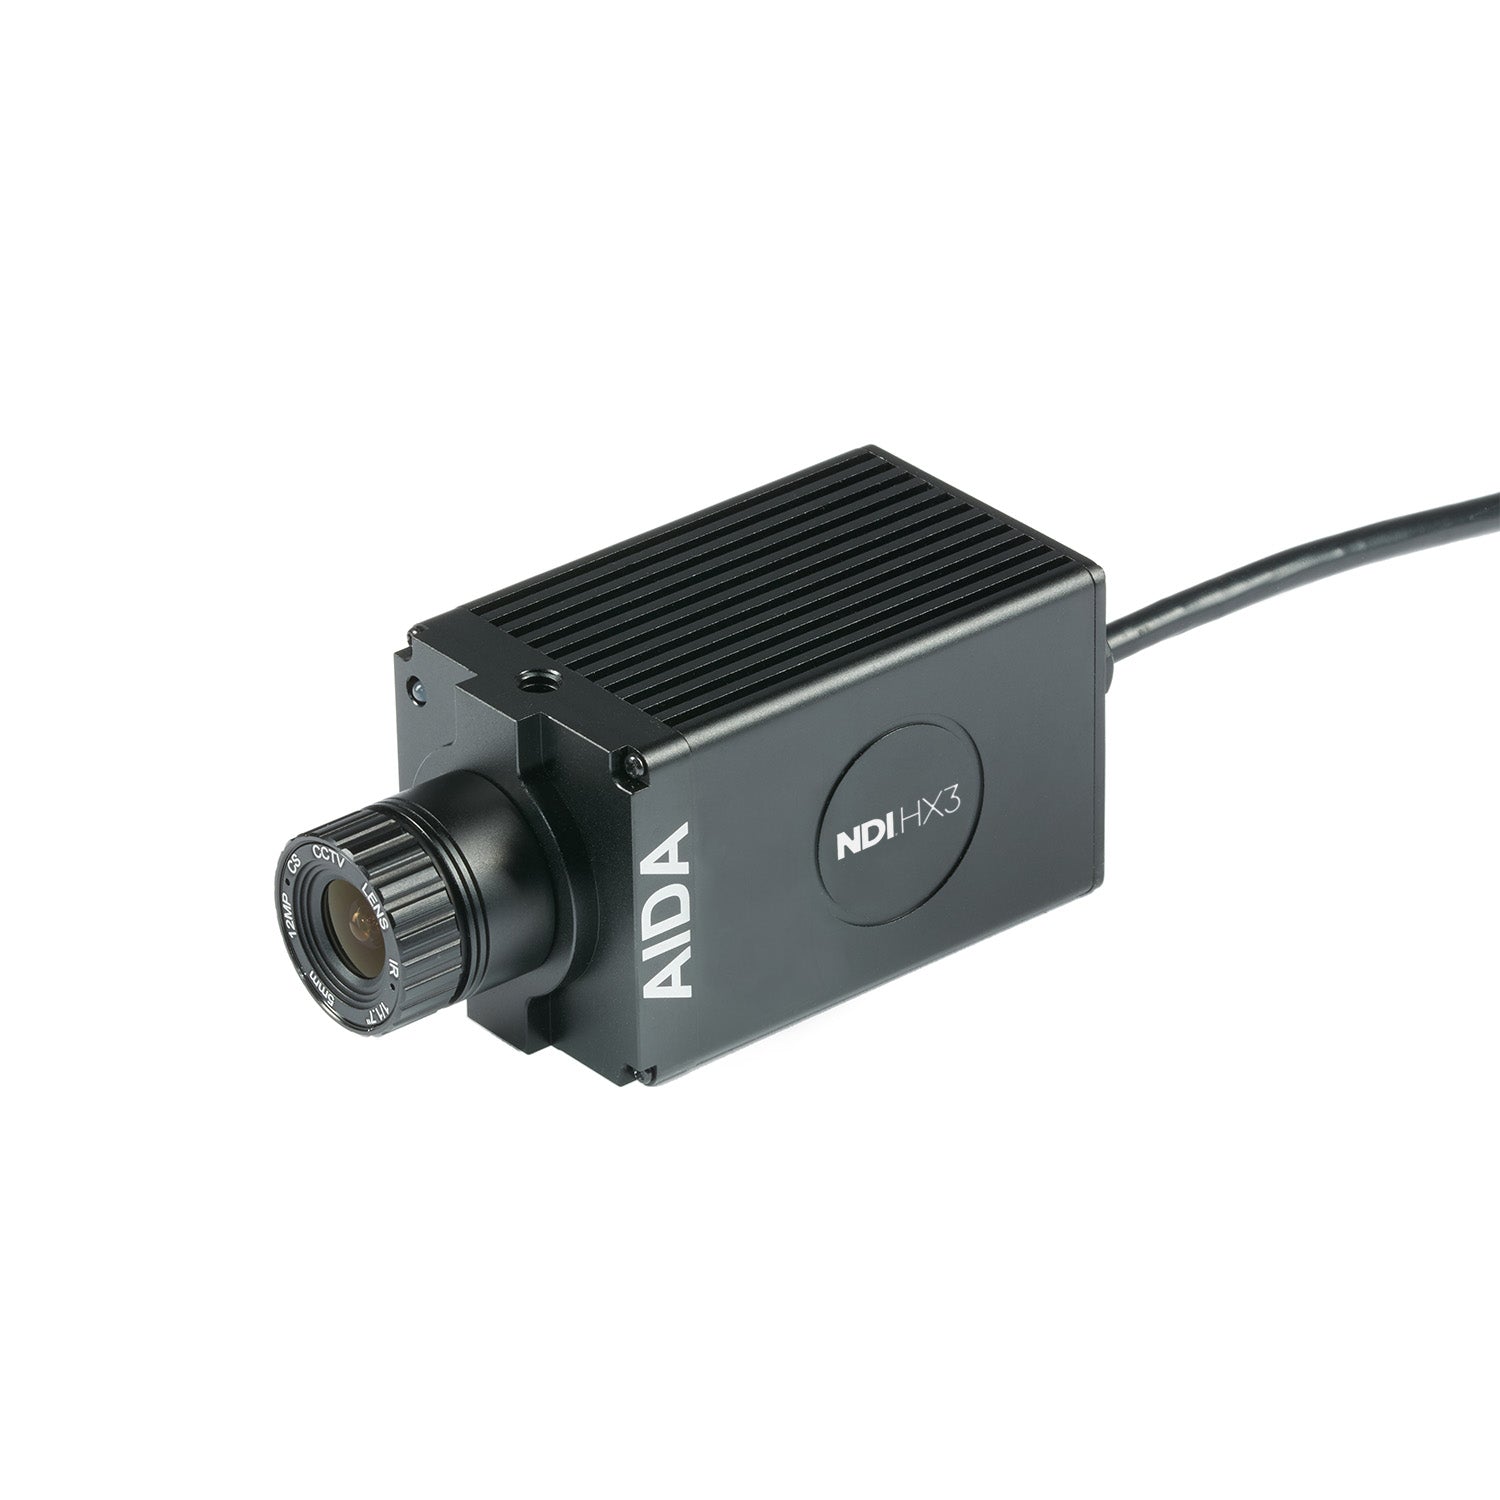 AIDA Imaging UHD-NDI3-300 - UHD 4K/60 NDI|HX3 HDMI POV Camera, front angle